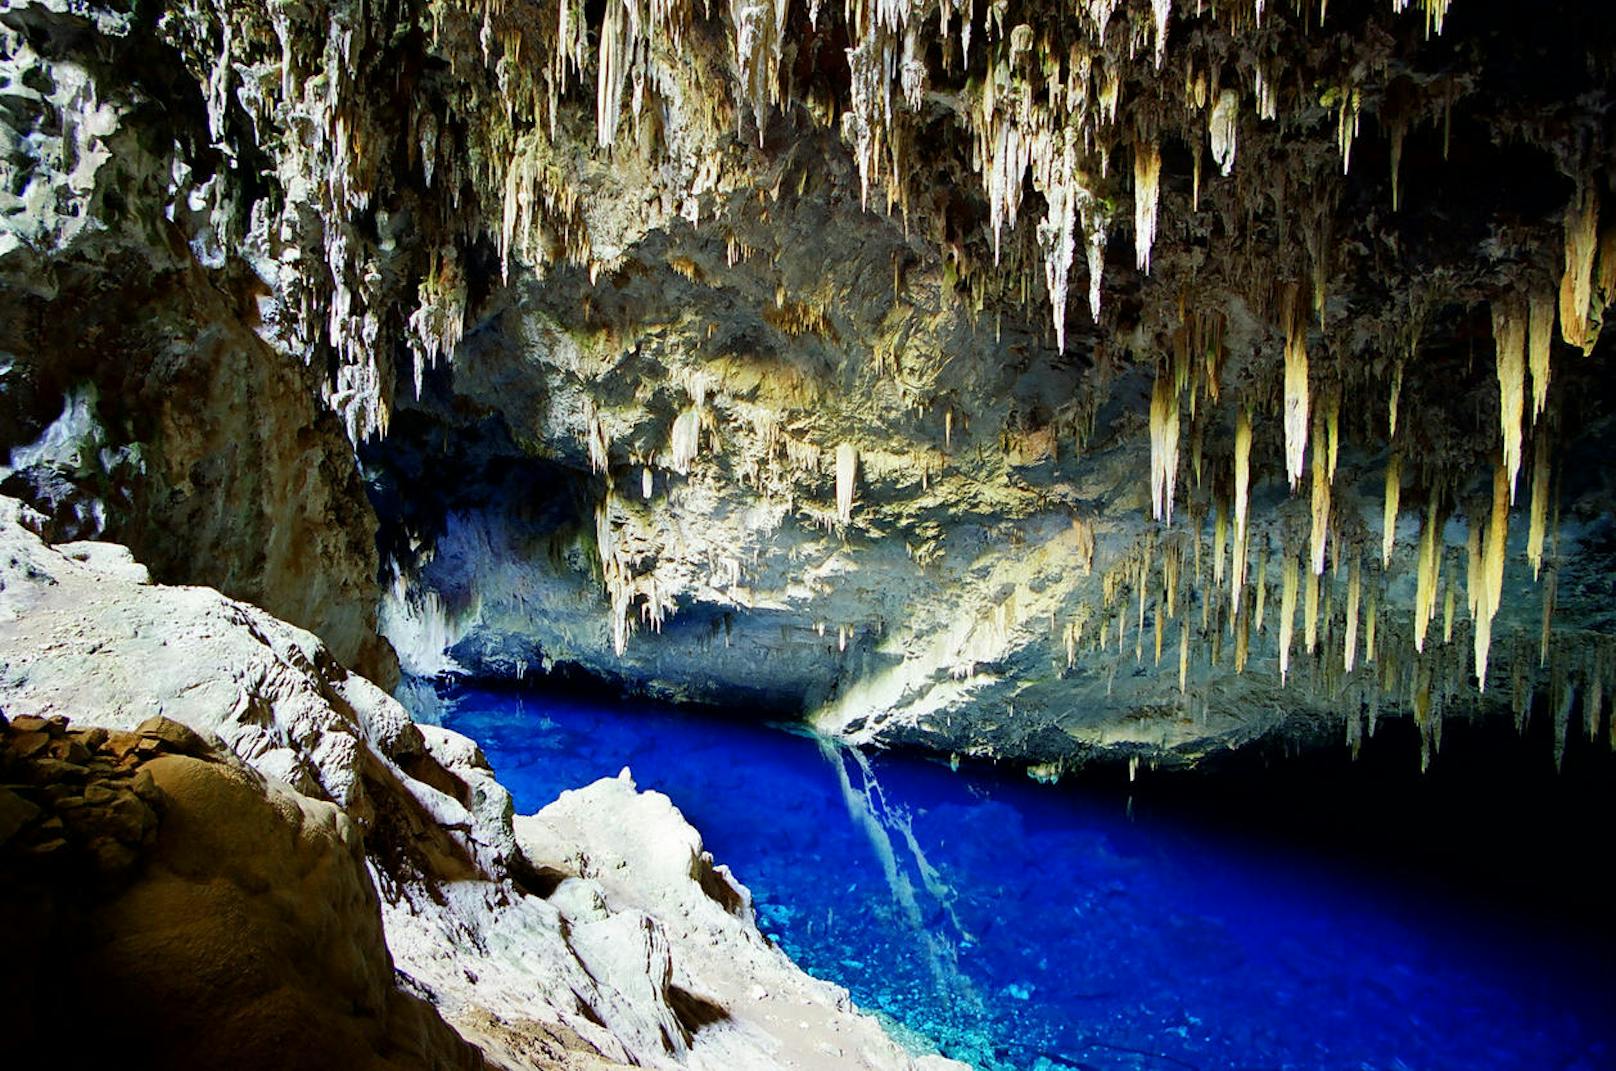 <b>Blaue Grotte - Capri, Italien</b>
Durch einen kleinen Lichtdurchlass scheint hier Sonnenlicht in eine geflutete Grotte und wird so im Wasser reflektiert, dass es die gesamte Höhle in ein wunderschön anzusehendes blaues Lichtermehr verwandelt.